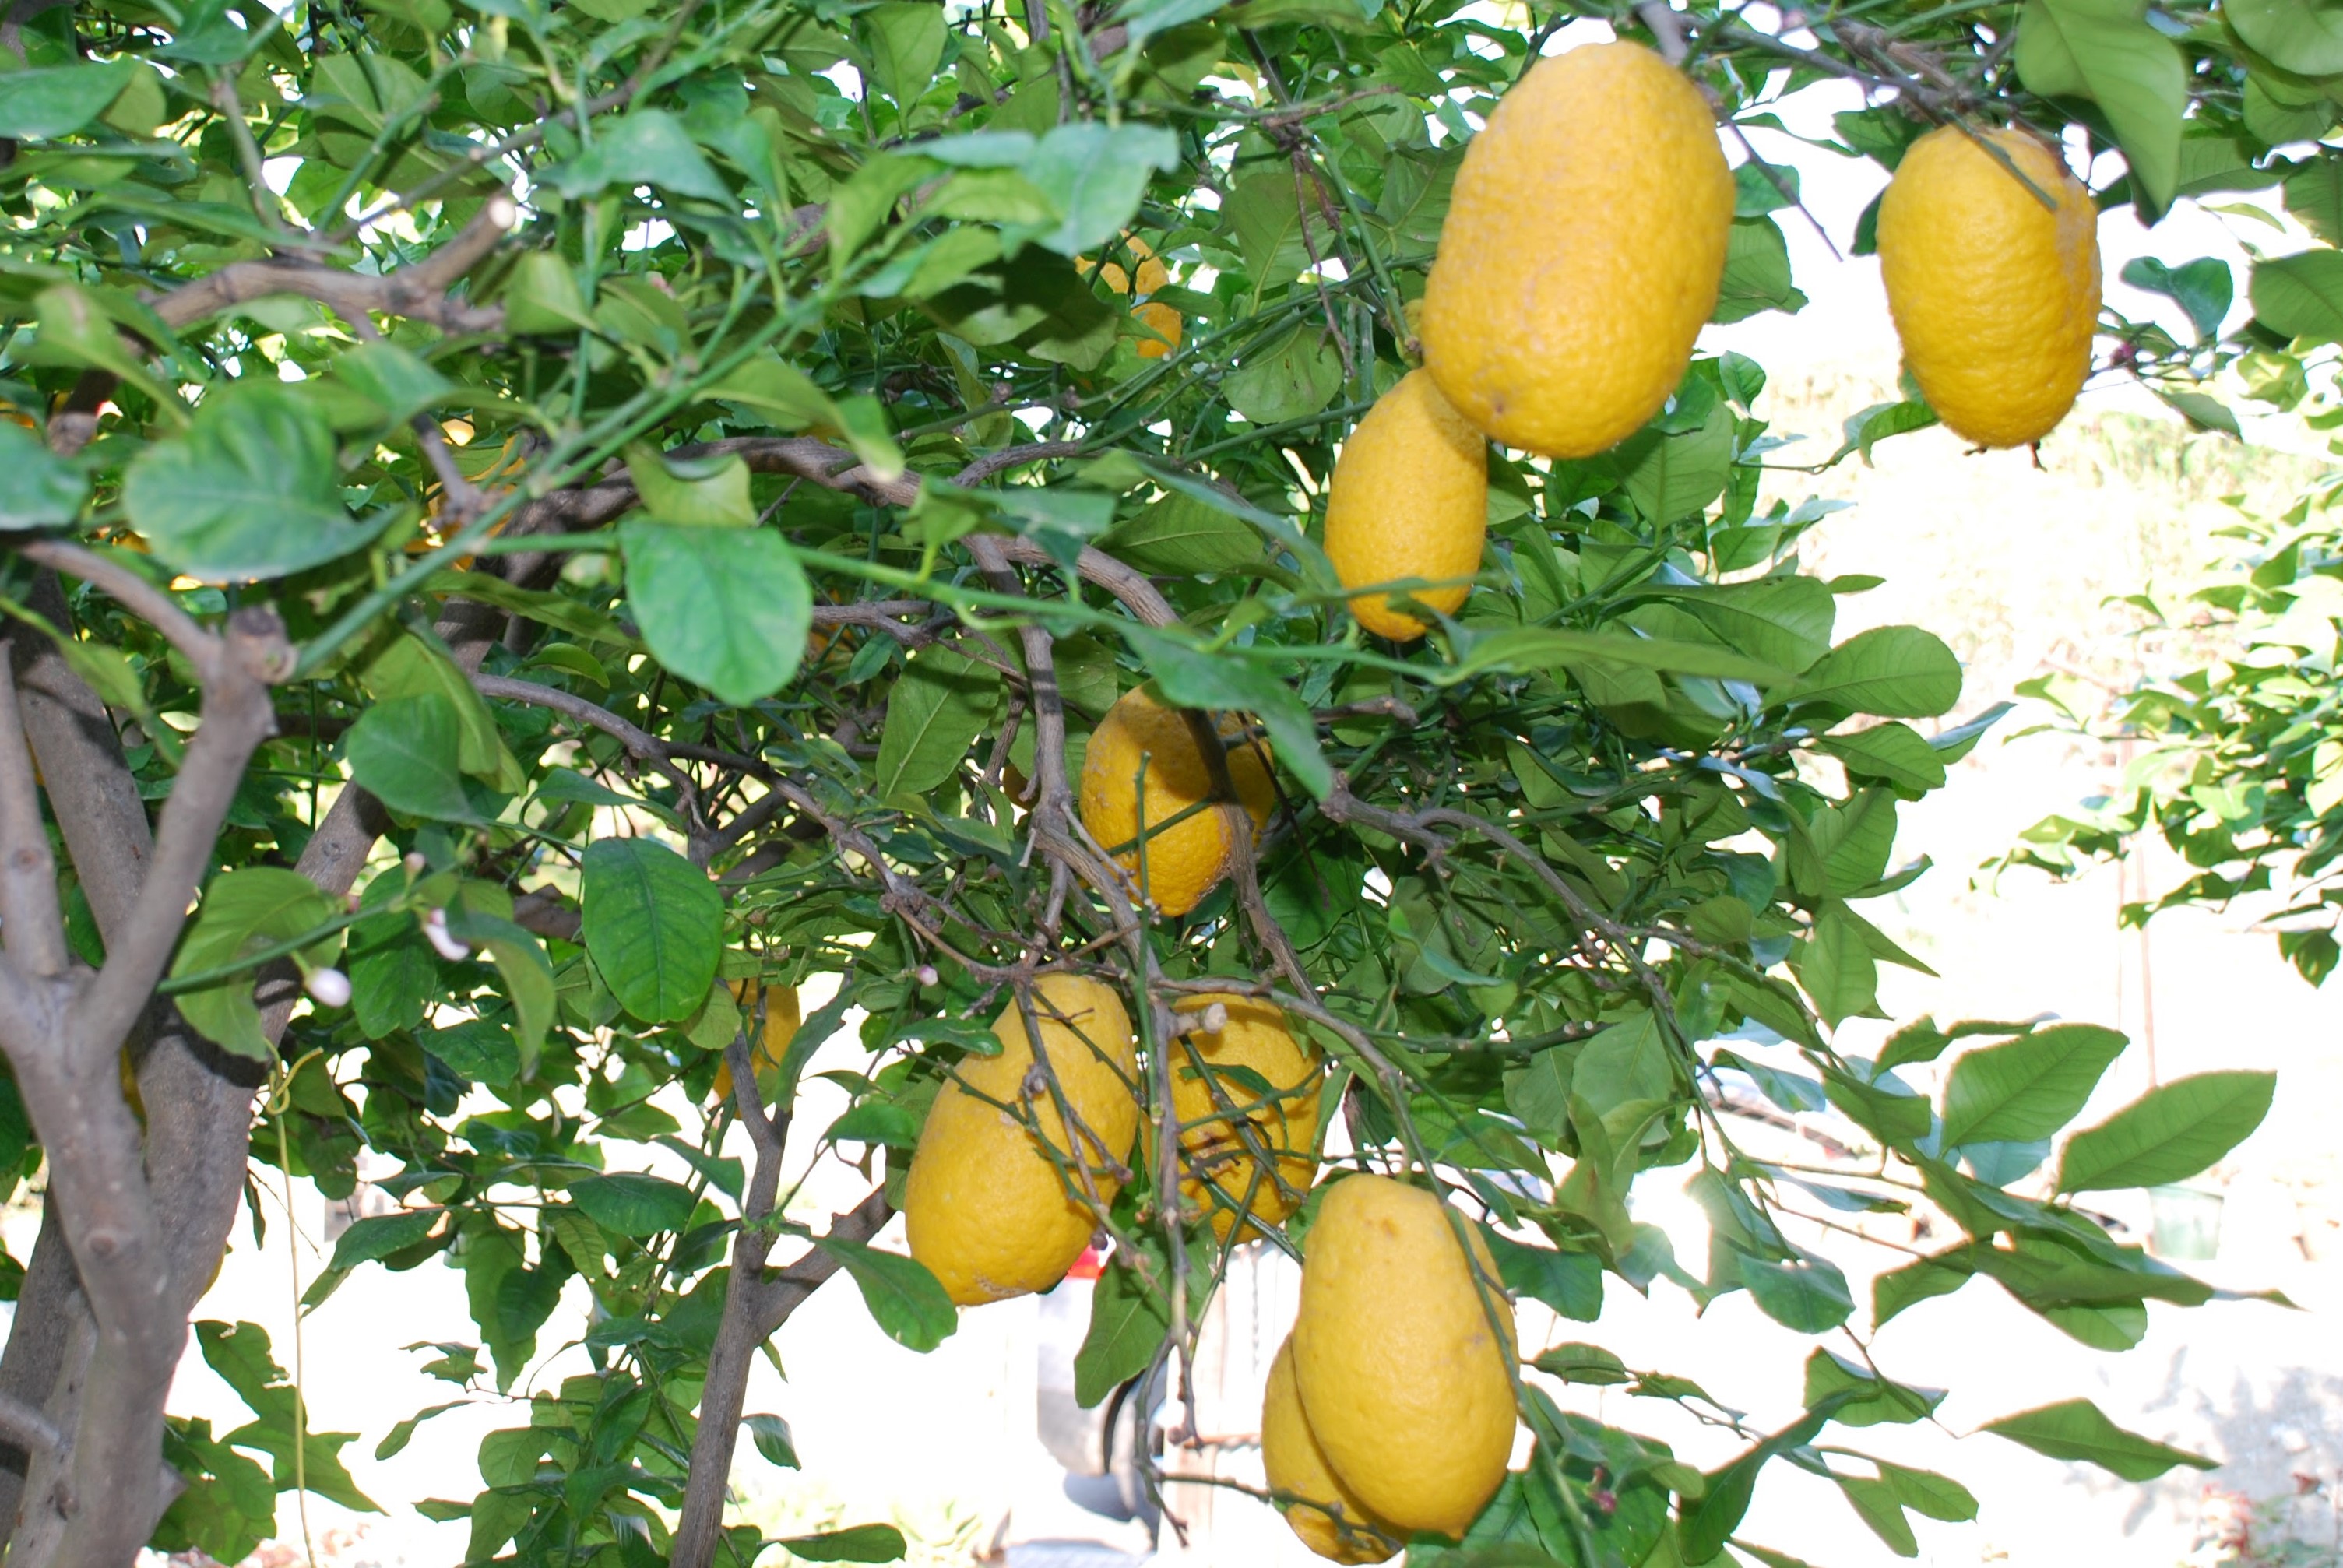 Lemons in Sicily; Photo by Francesco